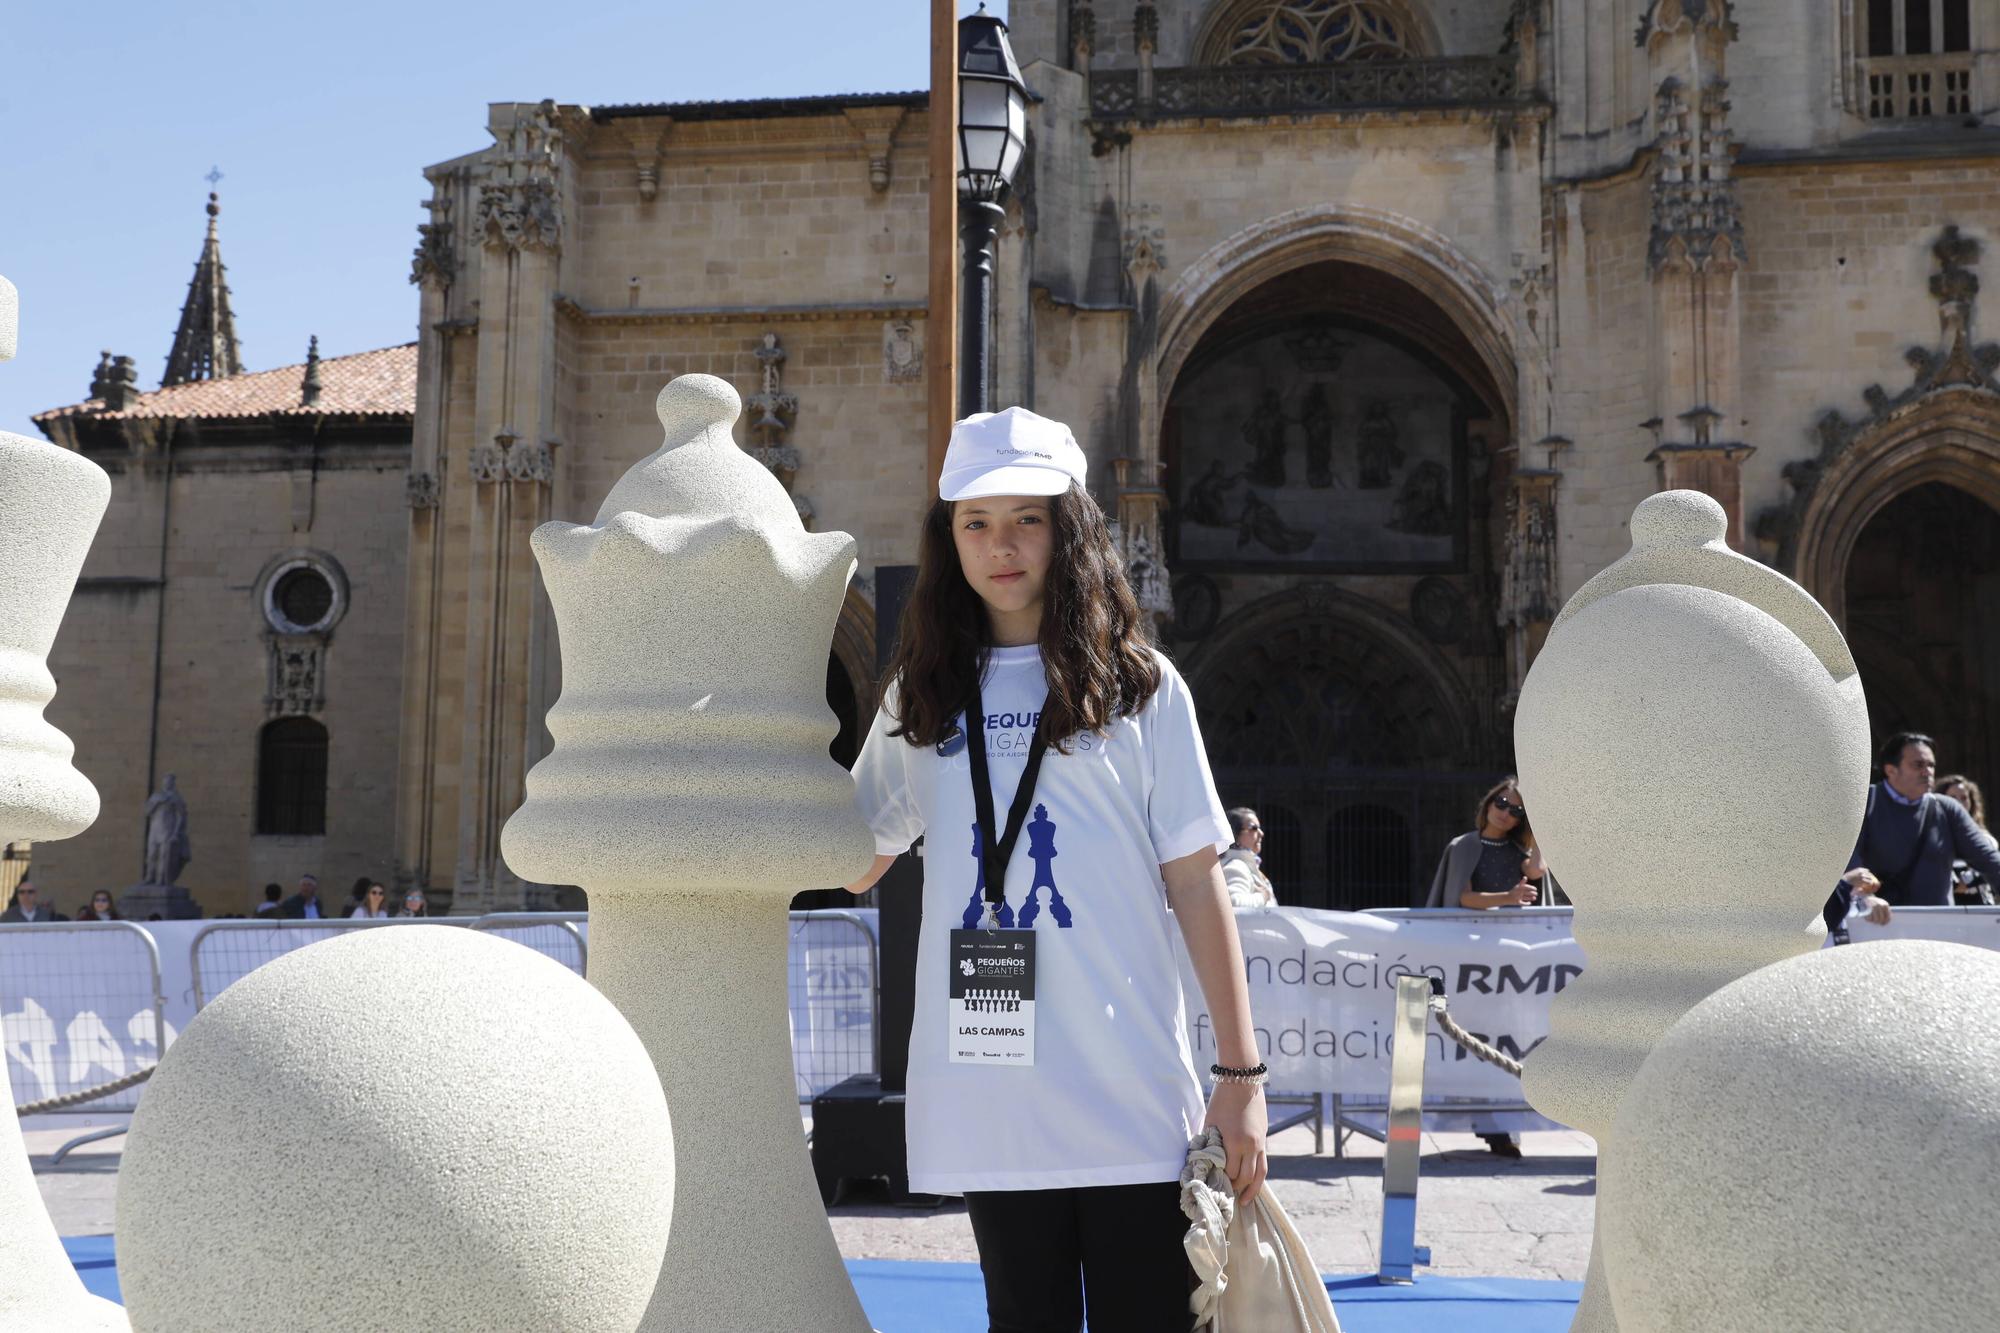 Así fue el torneo de ajedrez con piezas gigantes celebrado en la plaza de la Catedral